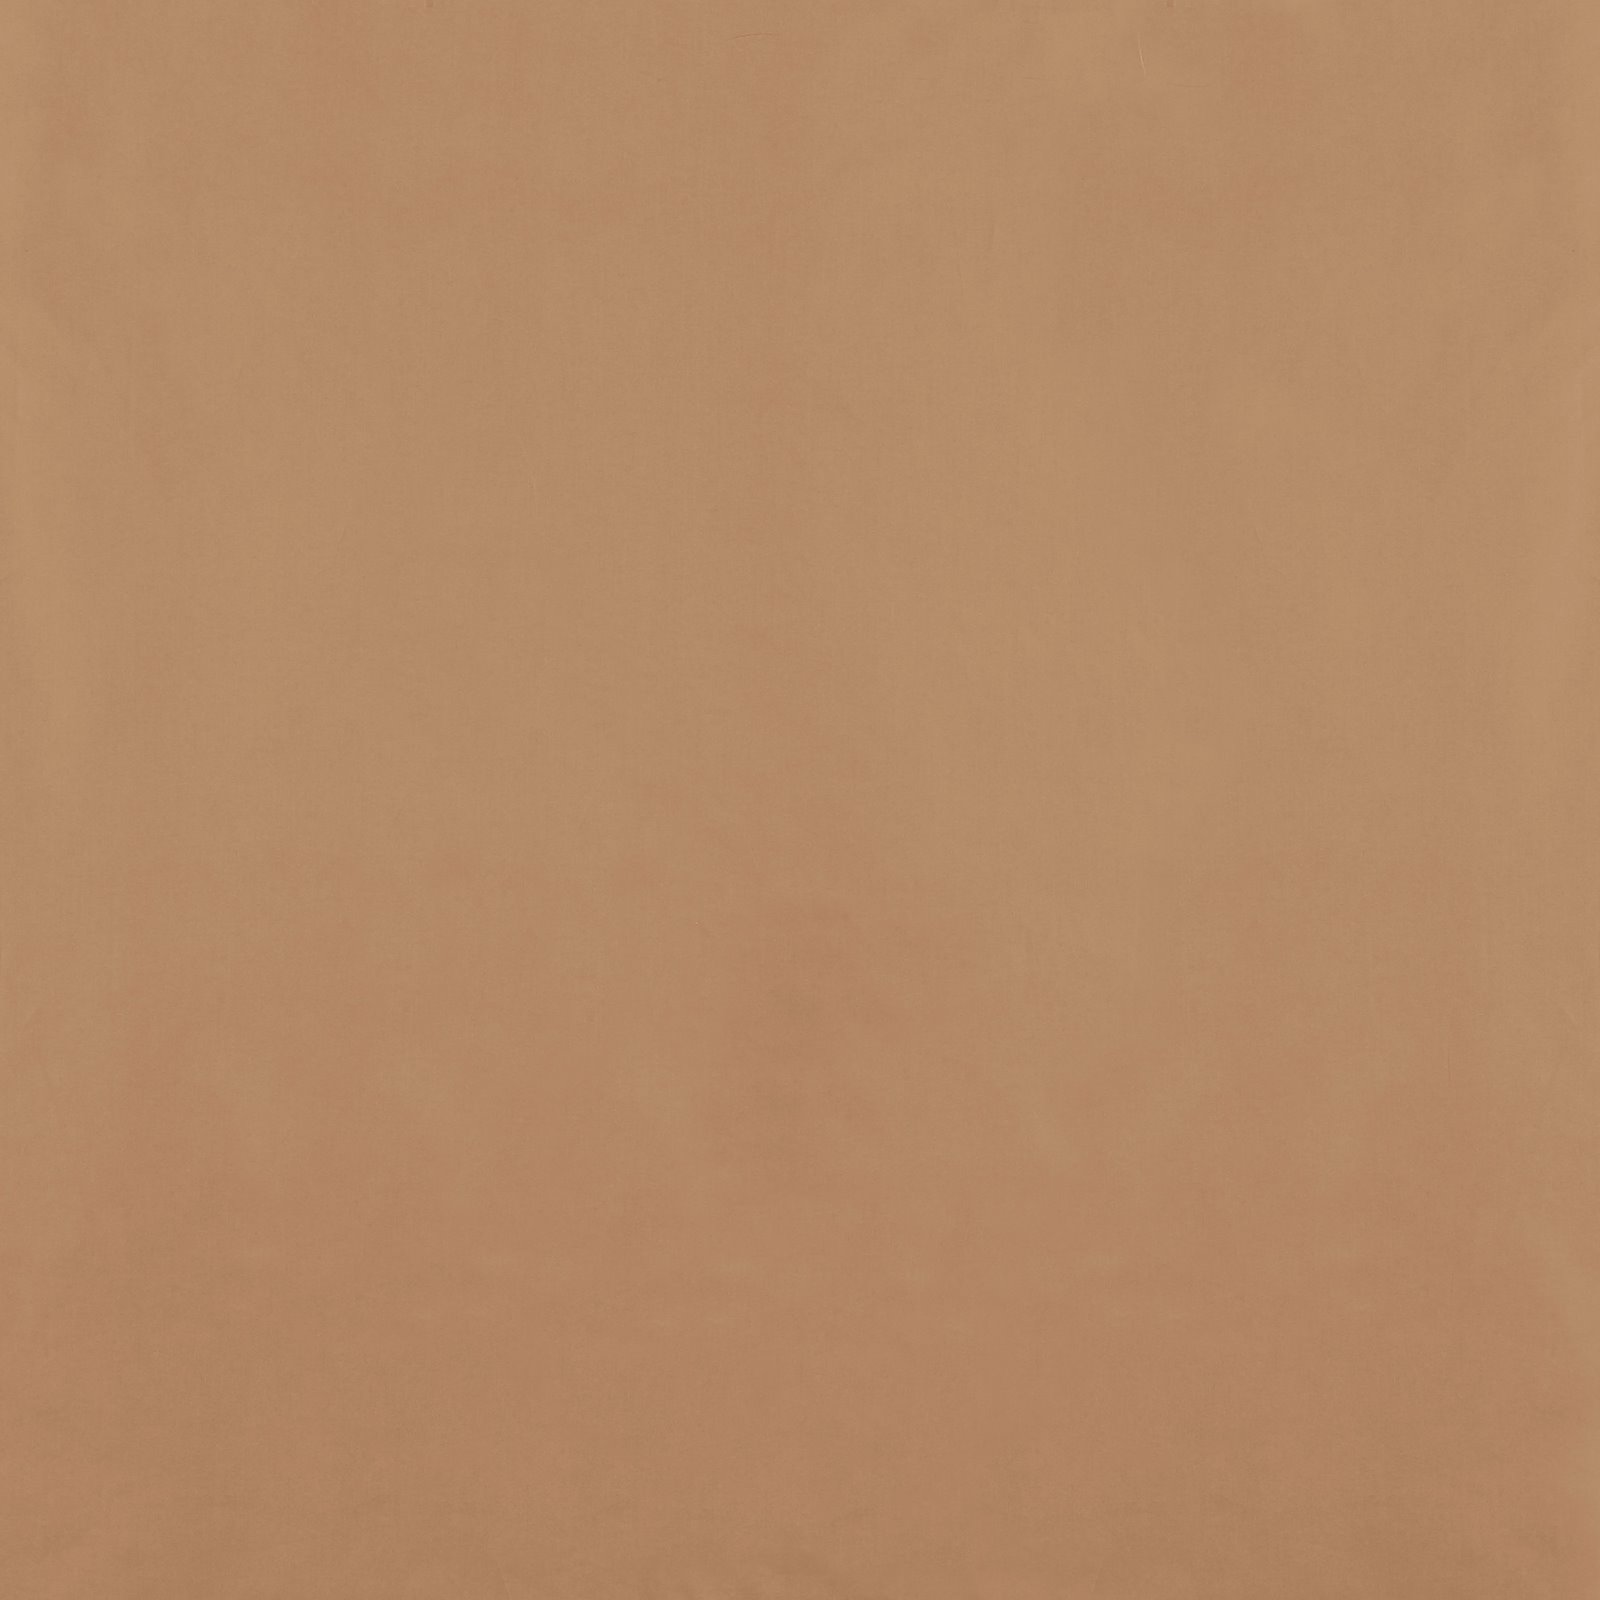 Bomullspoplin mørk beige 540120_pack_solid